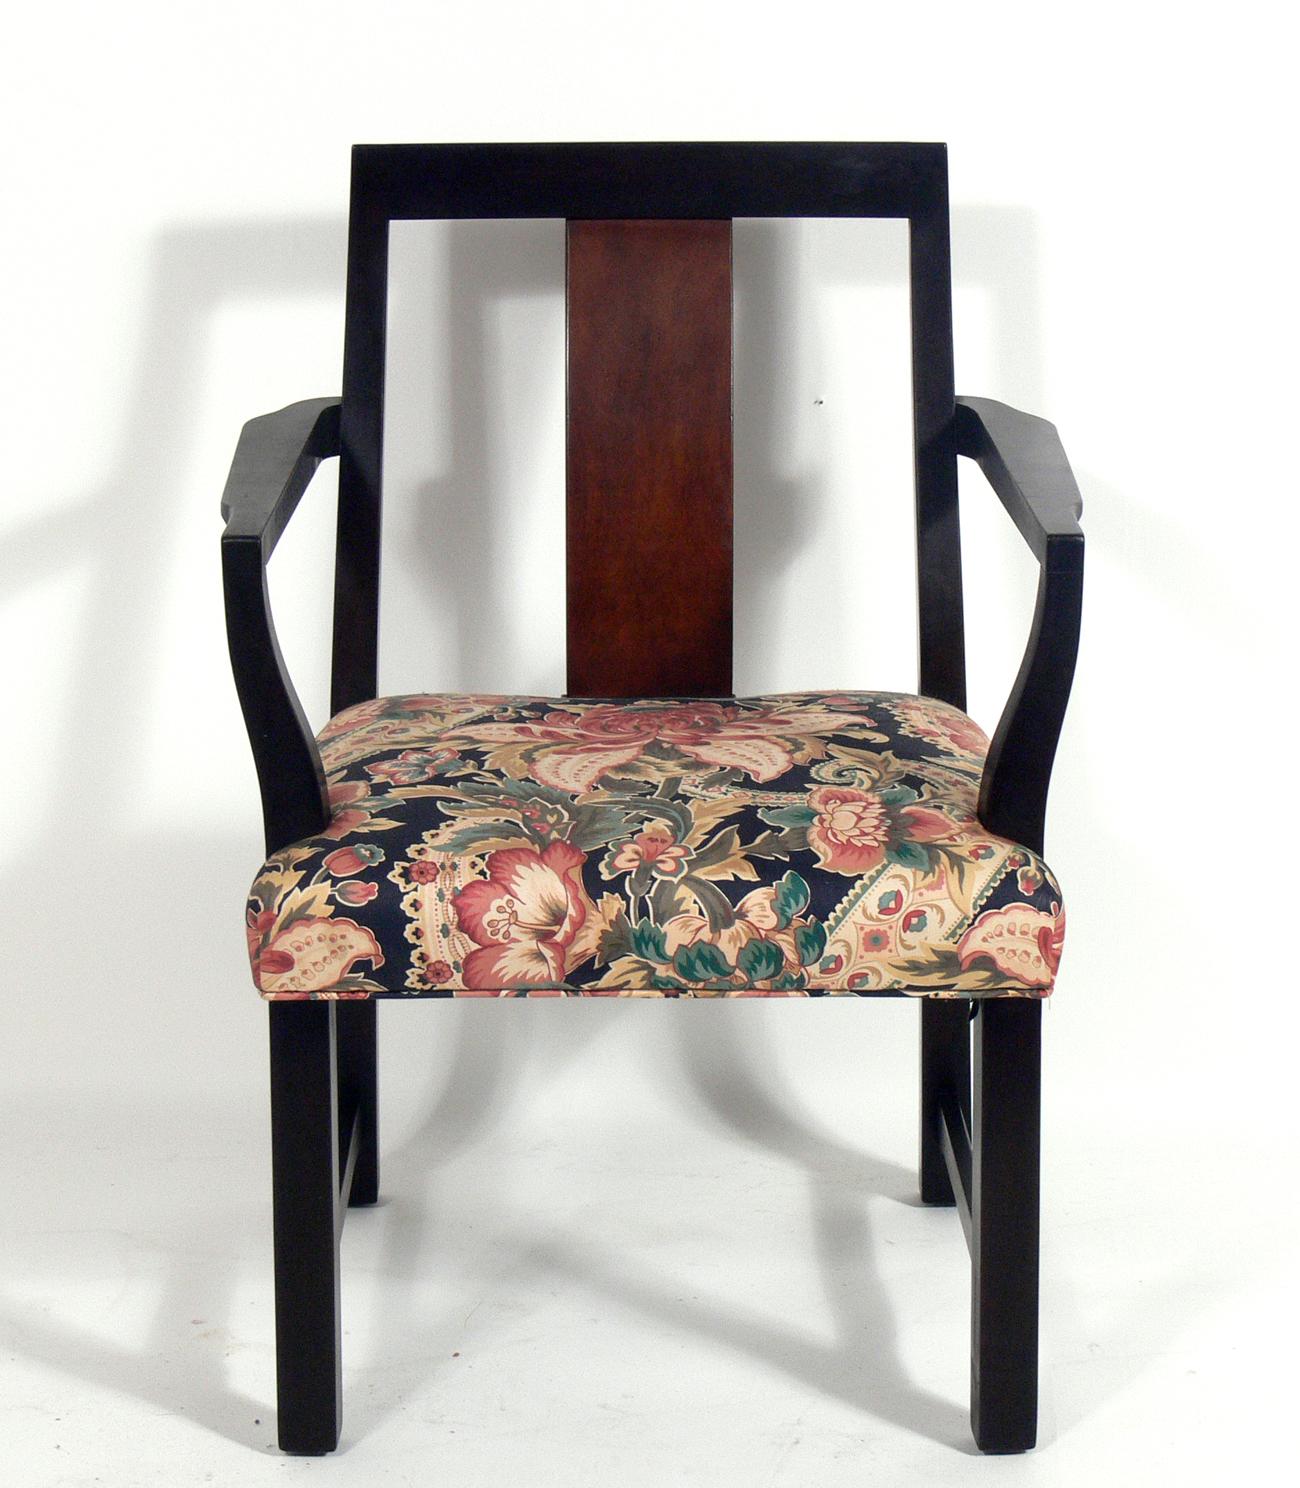 Satz von sechs Esszimmerstühlen, entworfen von Edward Wormley für Dunbar, amerikanisch, ca. 1950er Jahre. Elegante moderne Form mit subtilen asiatischen Einflüssen im Design. Das Set besteht aus zwei Sesseln und vier Beistellstühlen. Sie werden